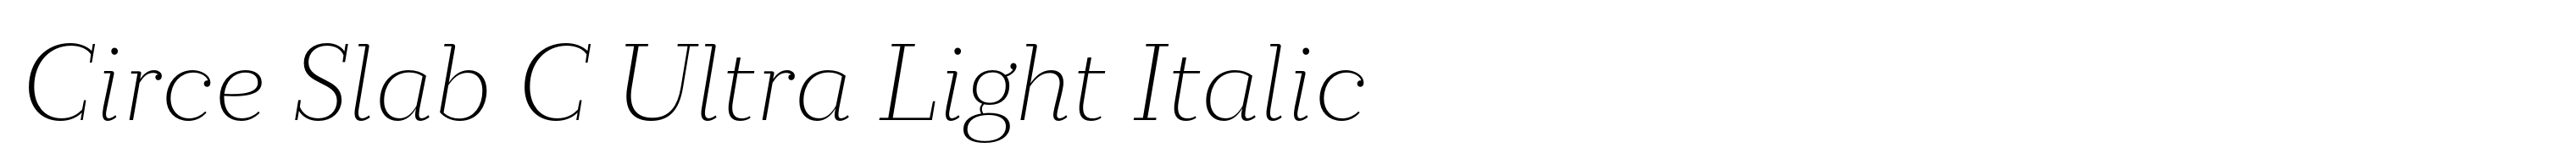 Circe Slab C Ultra Light Italic